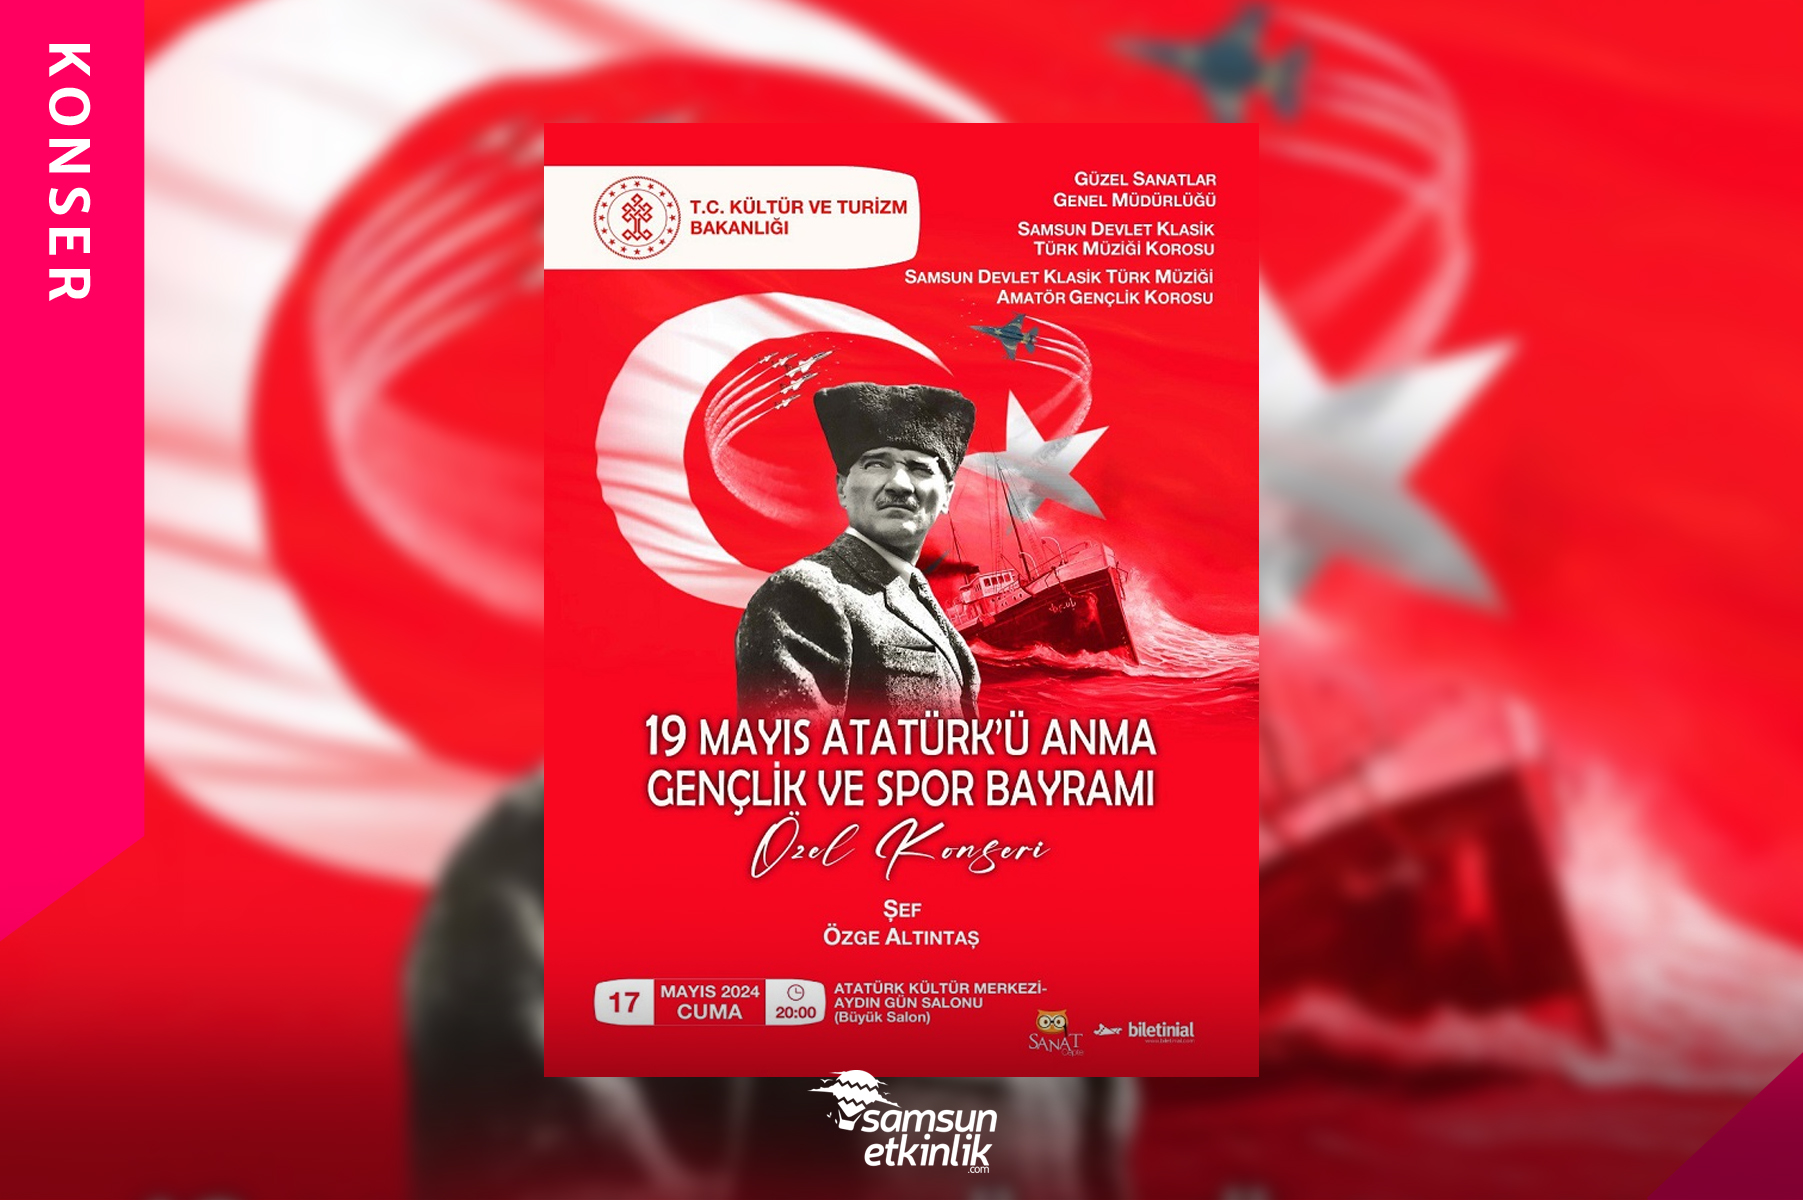 19 Mayıs Atatürk'ü Anma Gençlik ve Spor Bayramı Özel Konseri